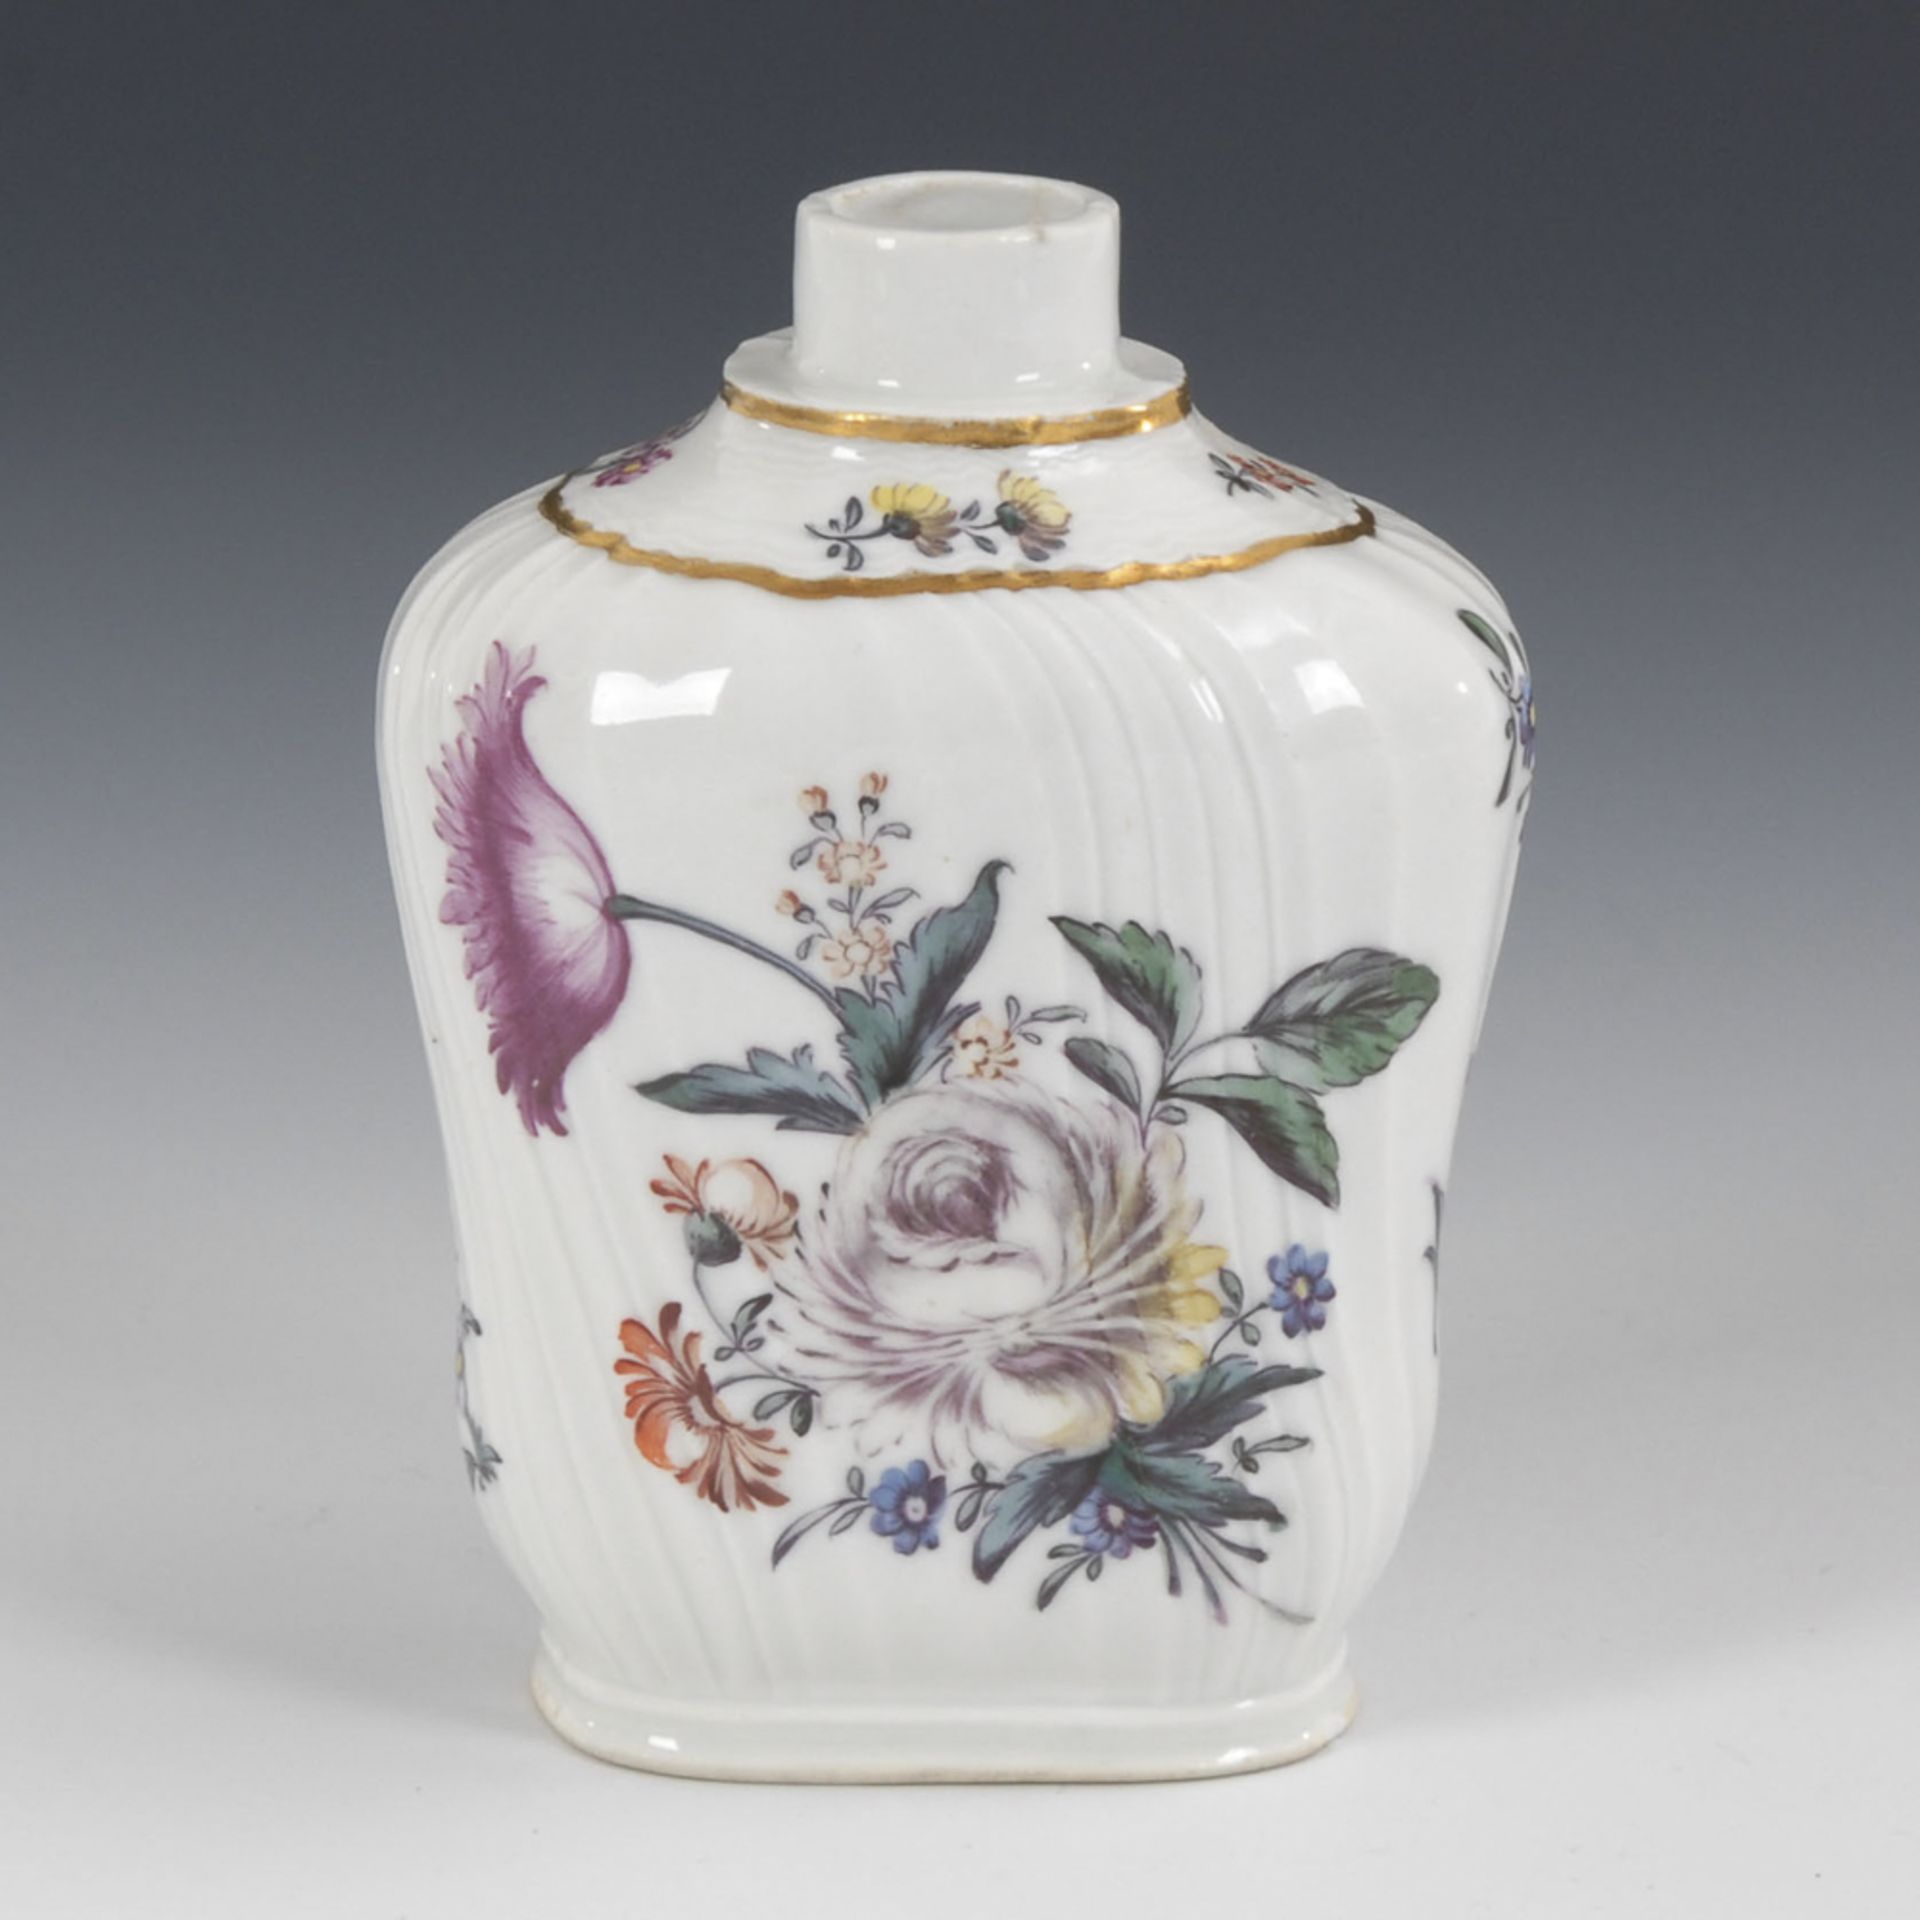 Teedose mit Blumenmalerei.Ungemarkt, wohl ANSBACH, 2. Hälfte 18. Jahrhundert. Polychrom bemalt,